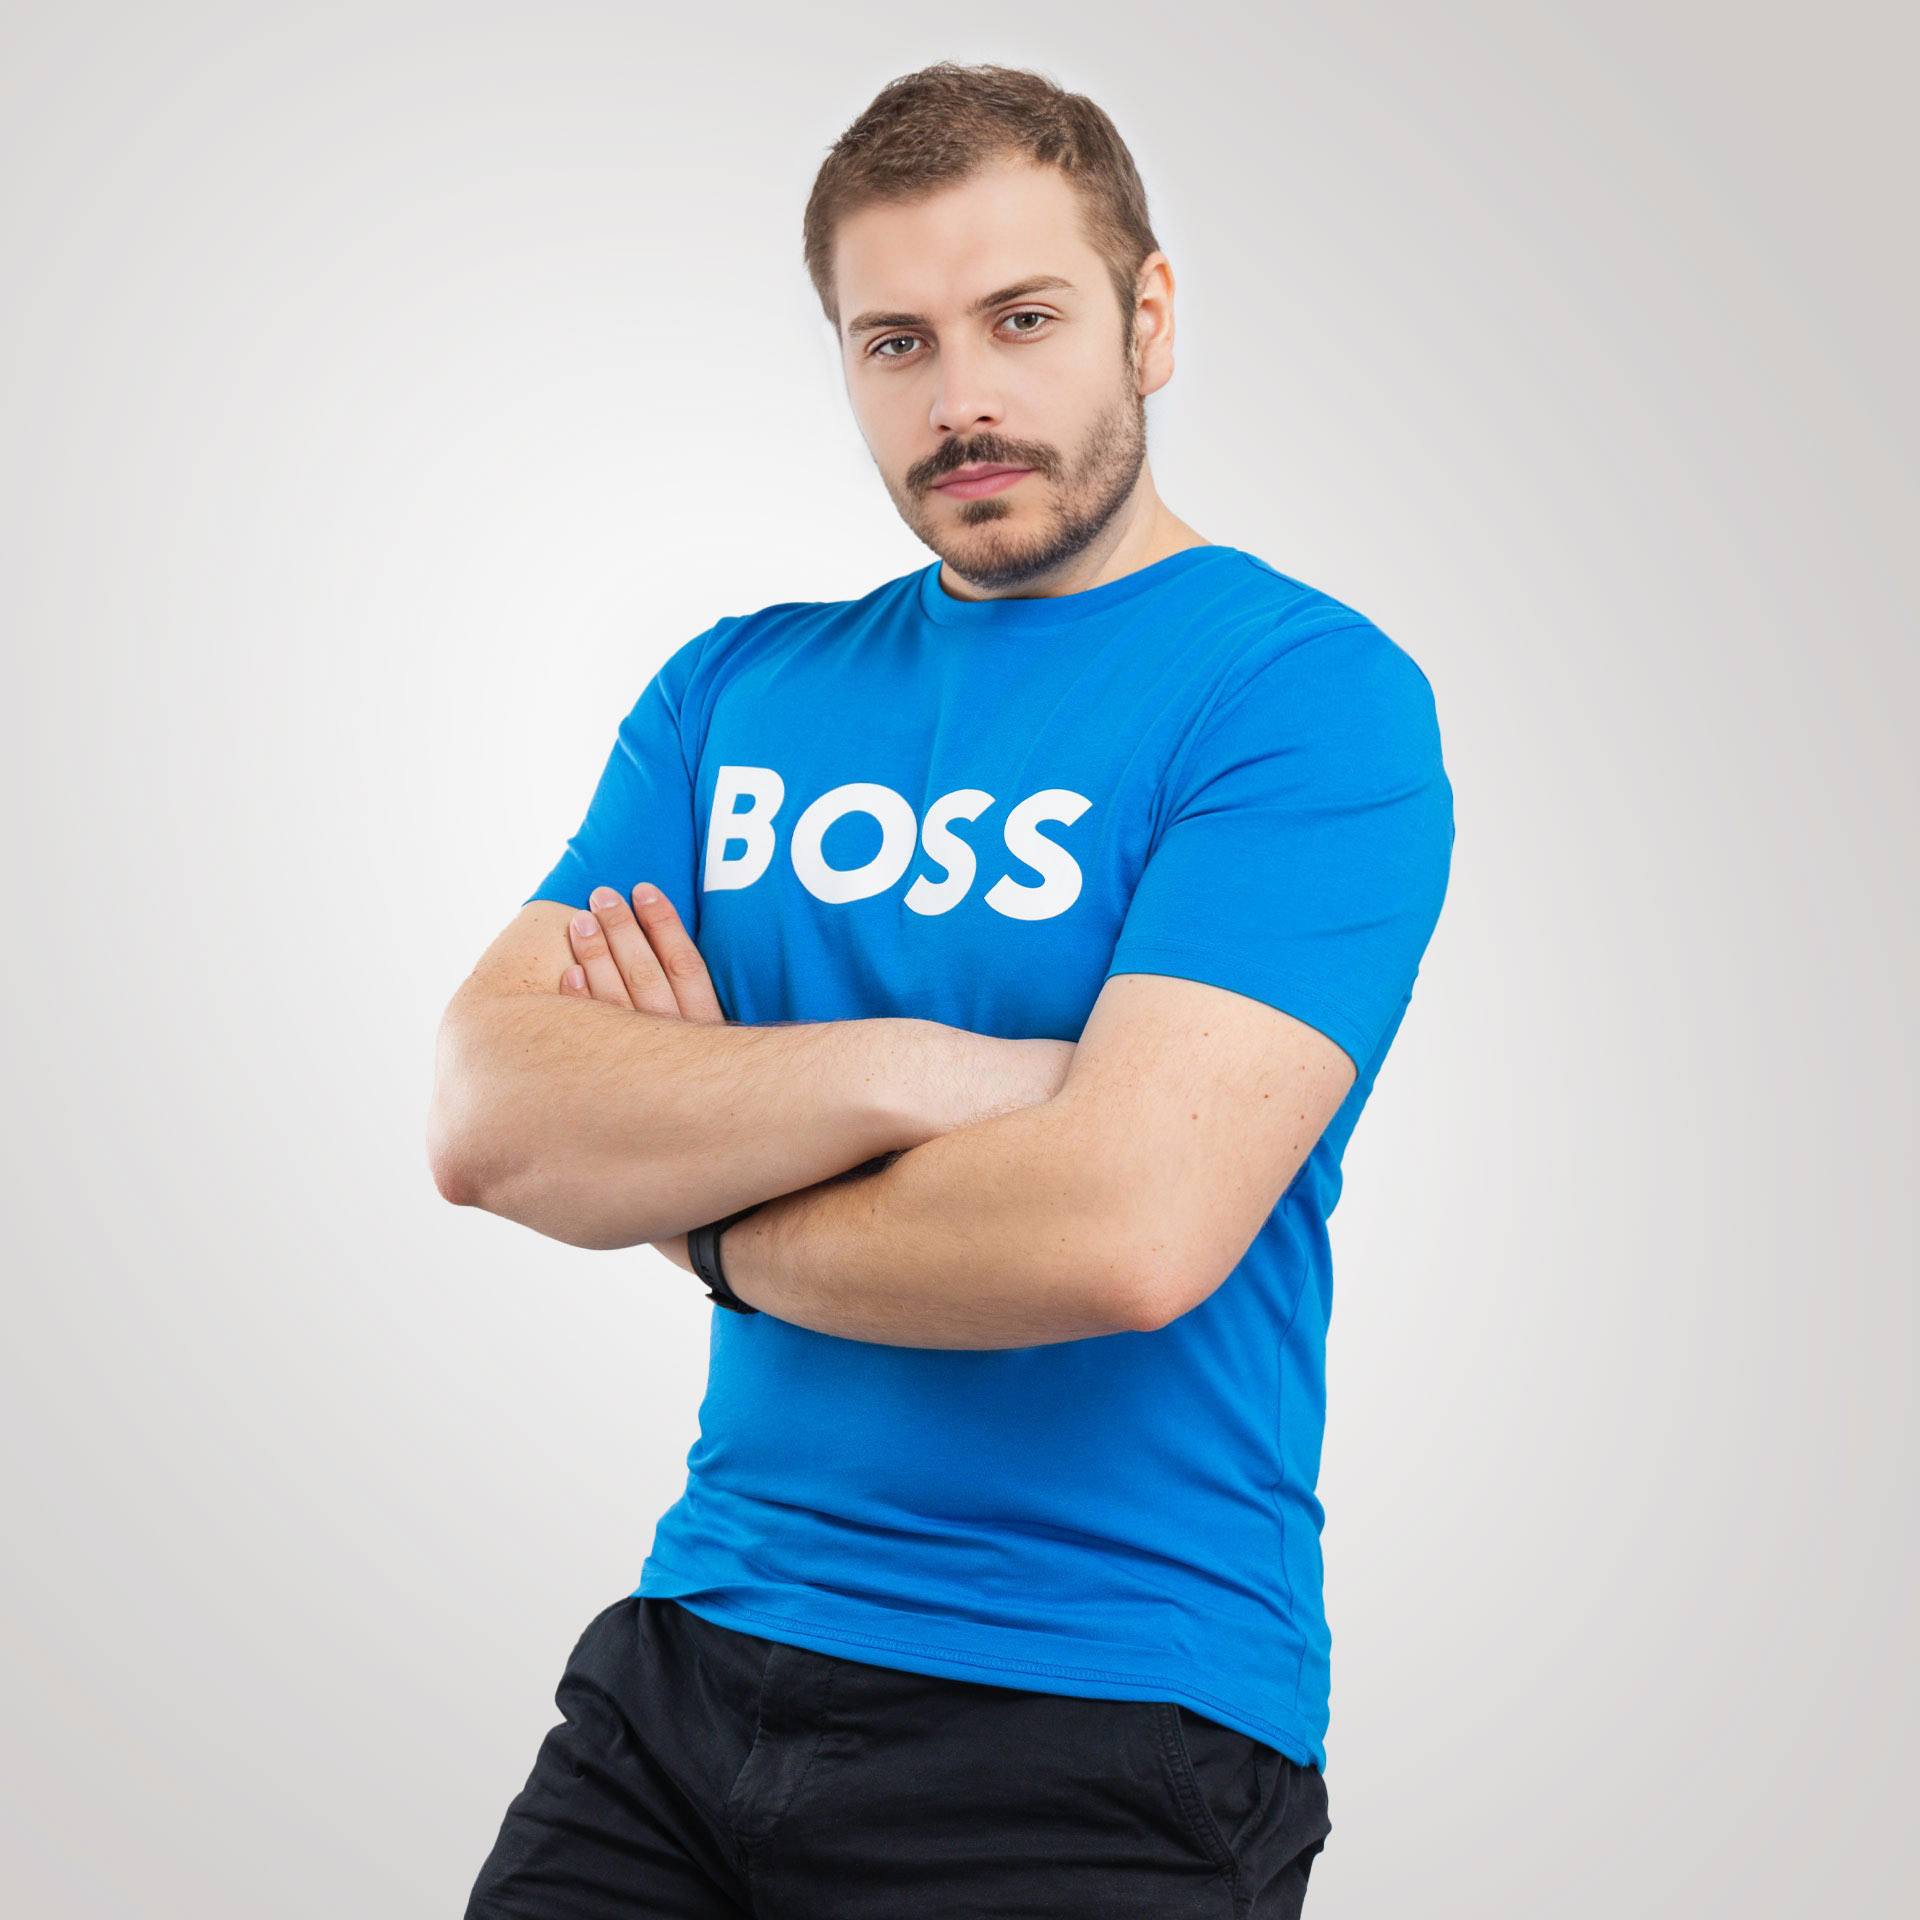 Koszulka męska Boss 